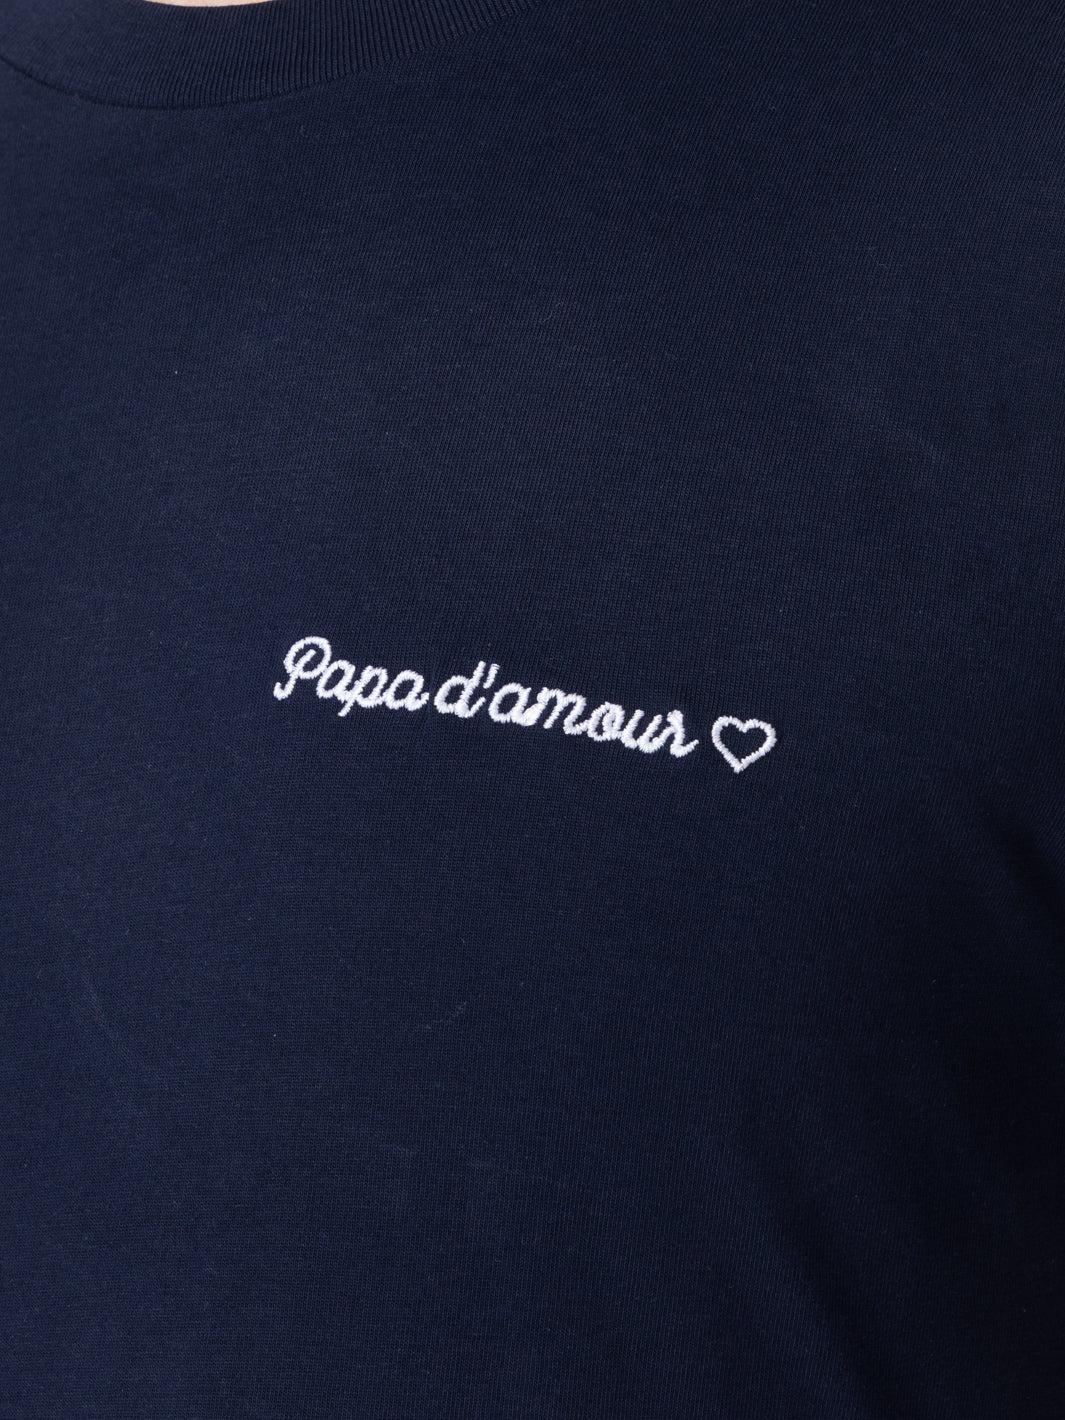 T-Shirt Papa d'amour.